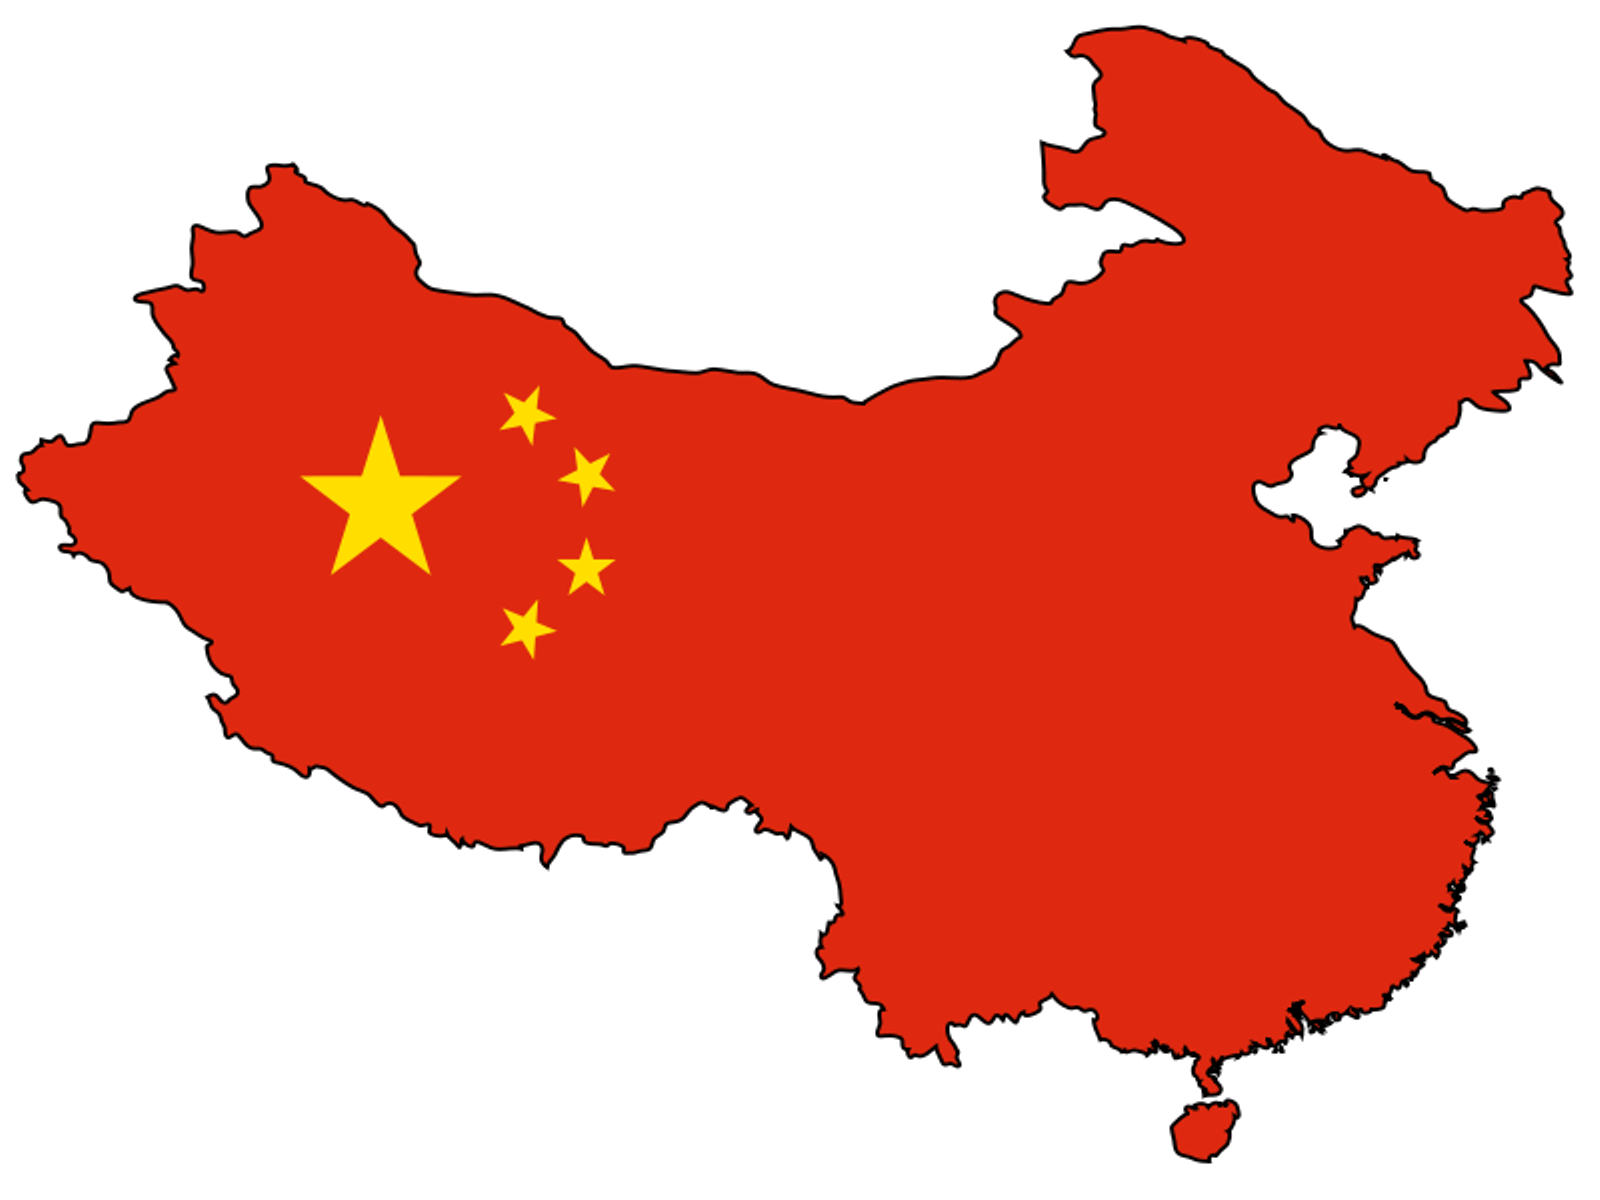 พื้นหลังของภาพ PNG ของจีน